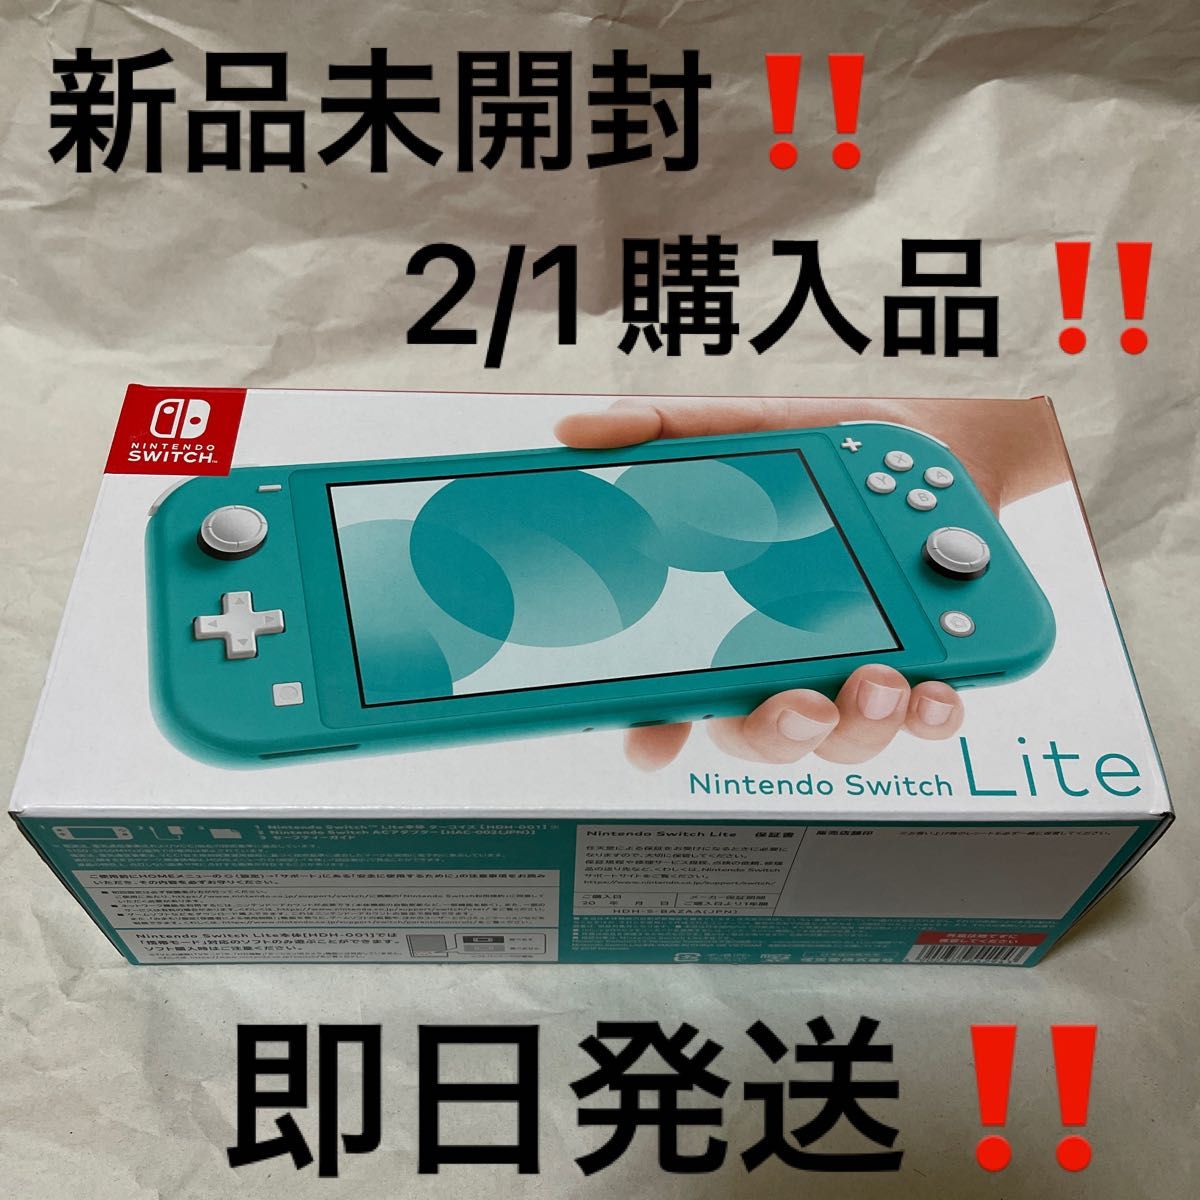 2/1購入品 新品未開封 Nintendo Switch Lite ターコイズ 店舗印無し 24